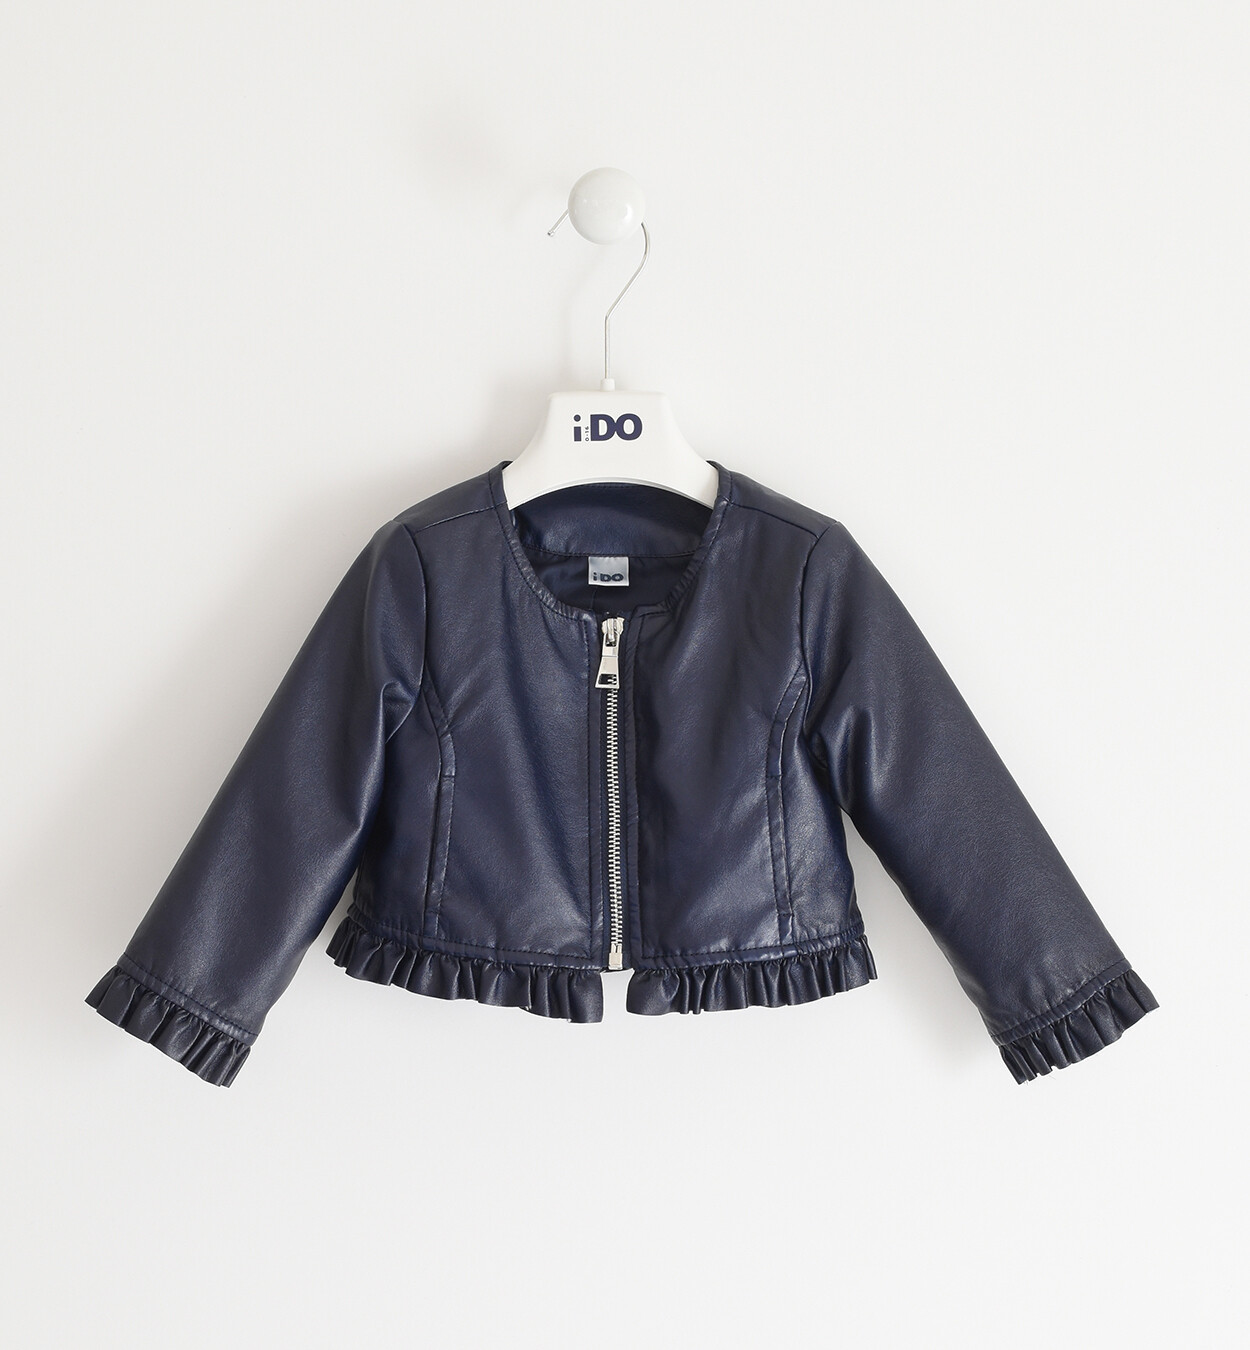 iDO Girls Eco Leather Navy Jacket